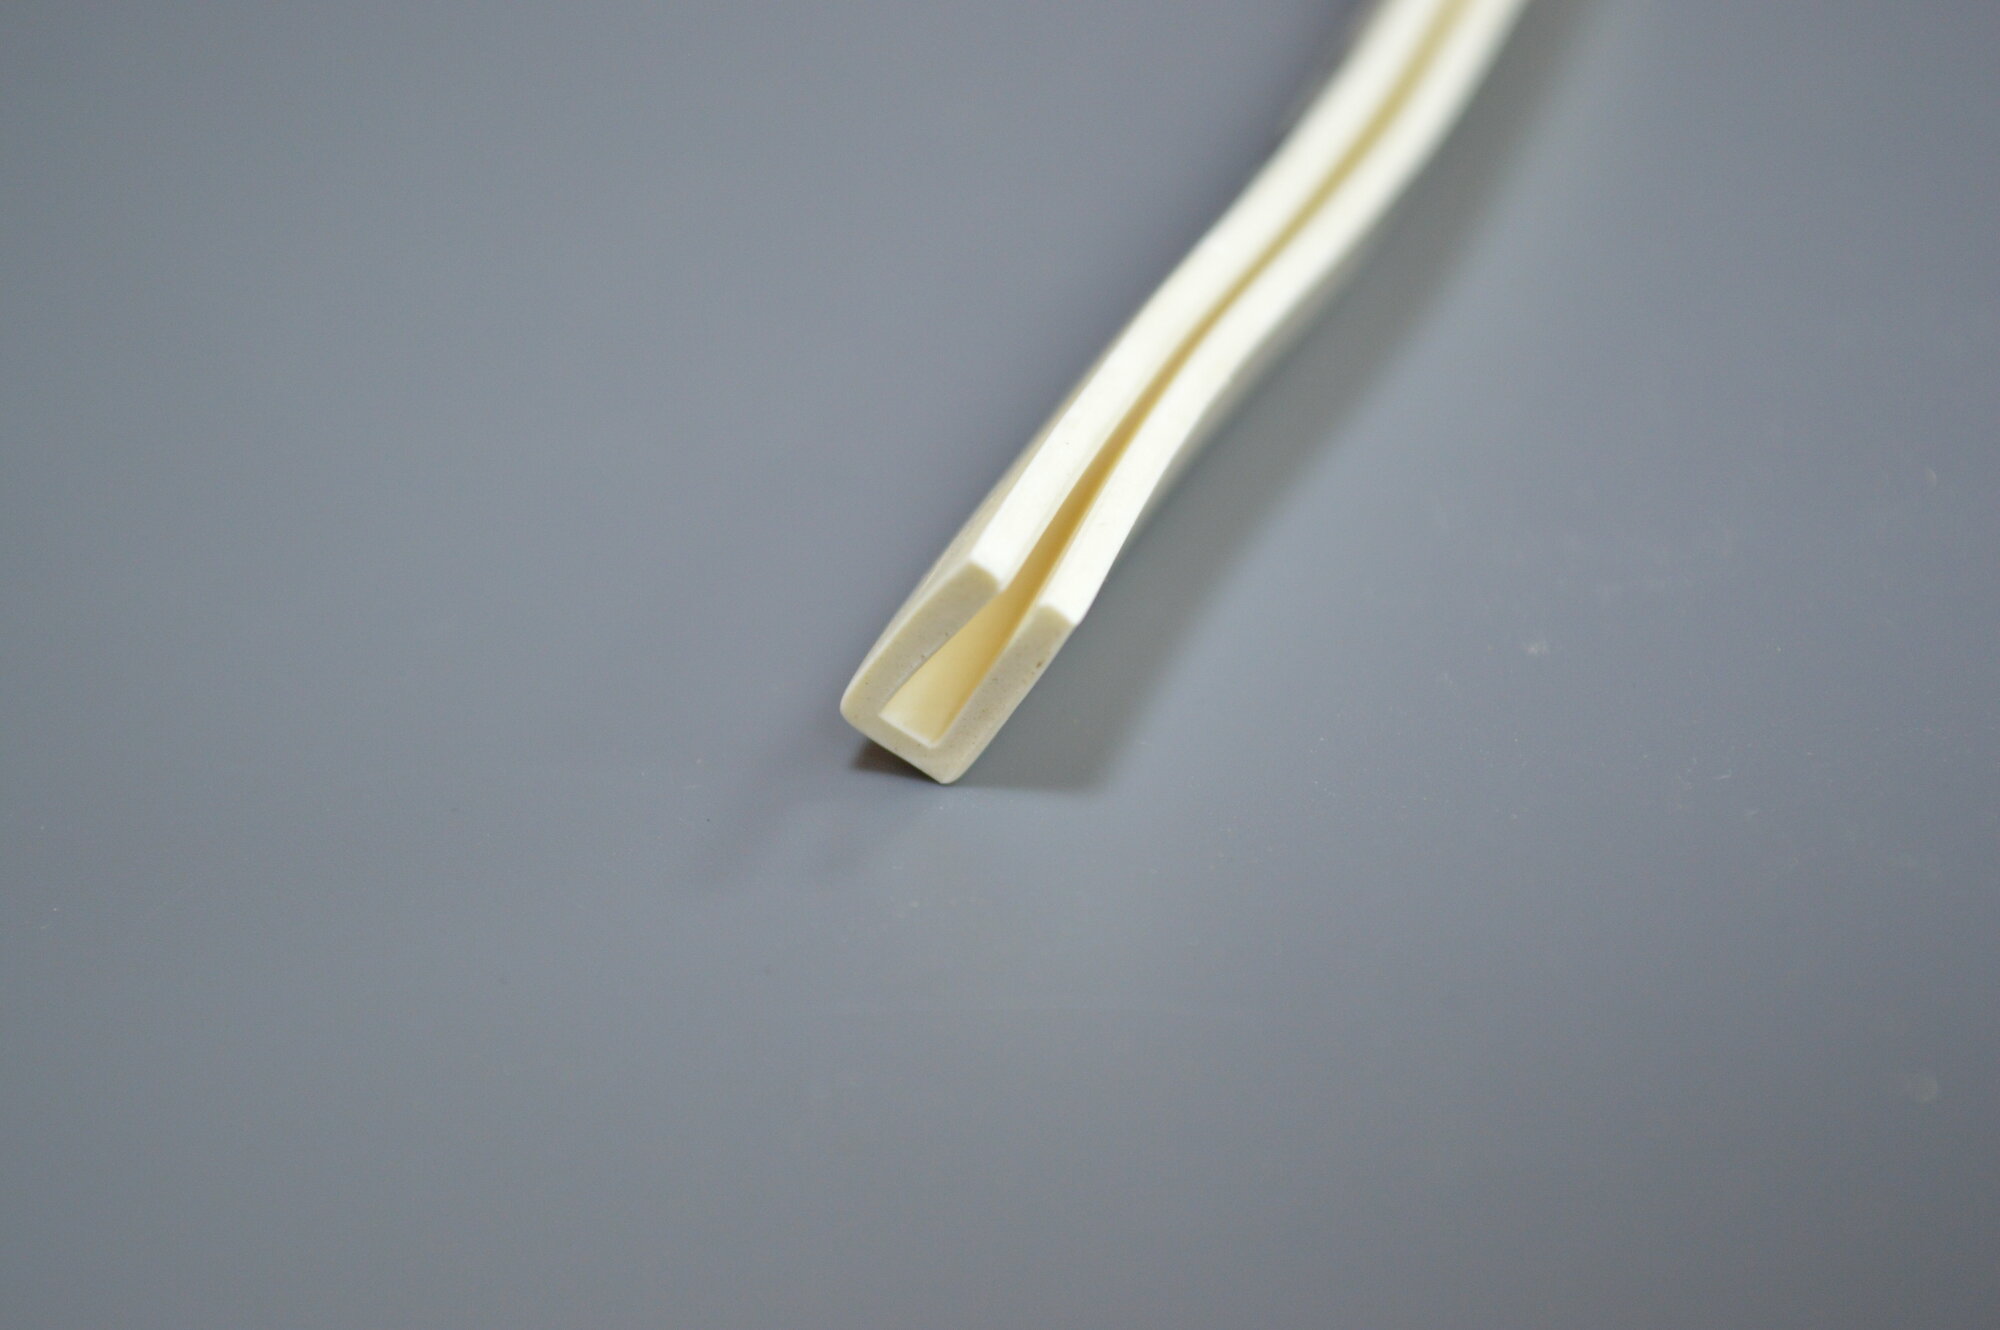 Профиль из силиконовой резины П-образный для уплотнения стекол и метала. Толщина стекла 4,5 мм. Длина 2 метра.